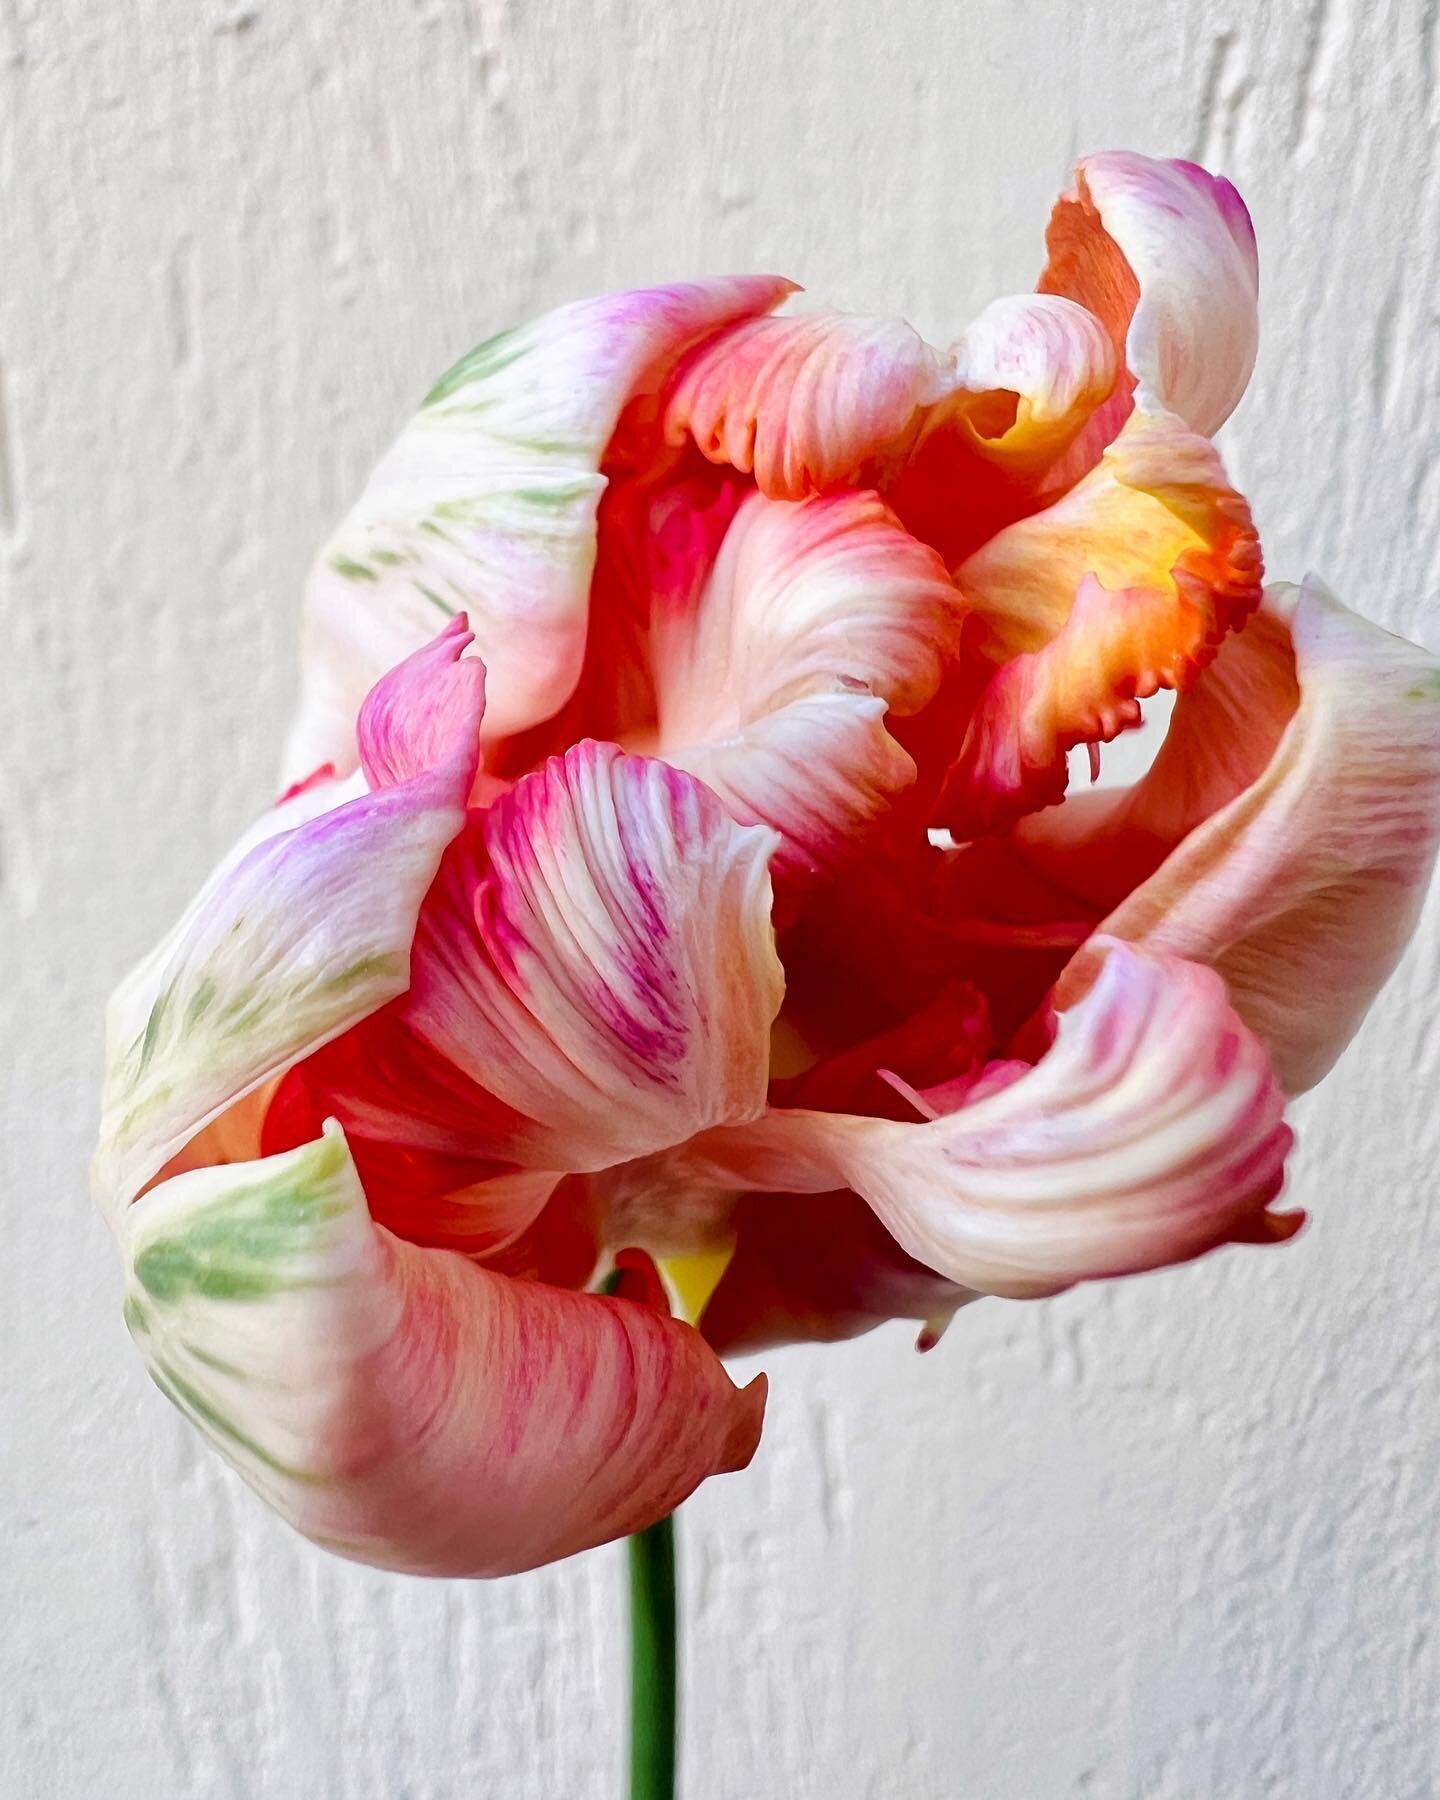 🌷TULIPES 🌷 
Dans vos bouquets de saison cette semaine, il y aura entre autres les magnifiques tulipes 🌷et an&eacute;mones 🌸de notre producteur @petales_berry fra&icirc;chement install&eacute; pr&egrave;s de @chateauroux36 . Elles sont cultiv&eacu